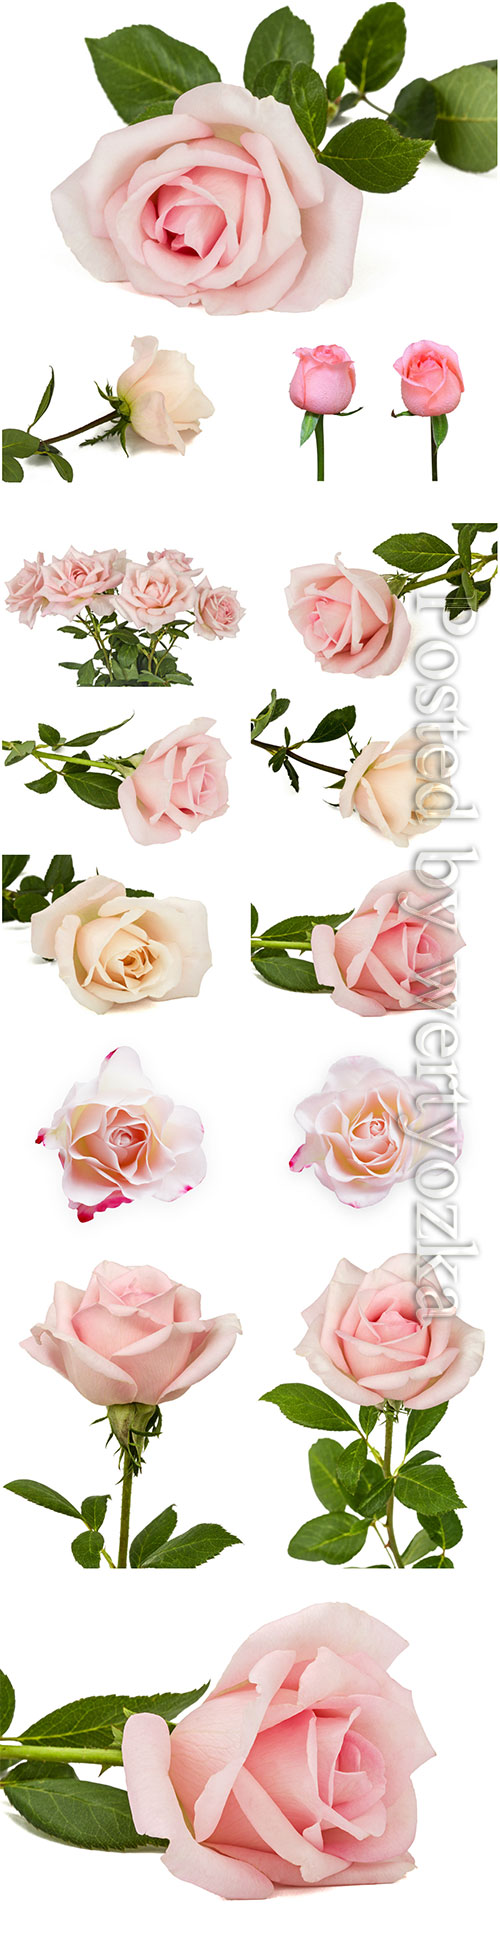 Luxury roses on white background stock photo